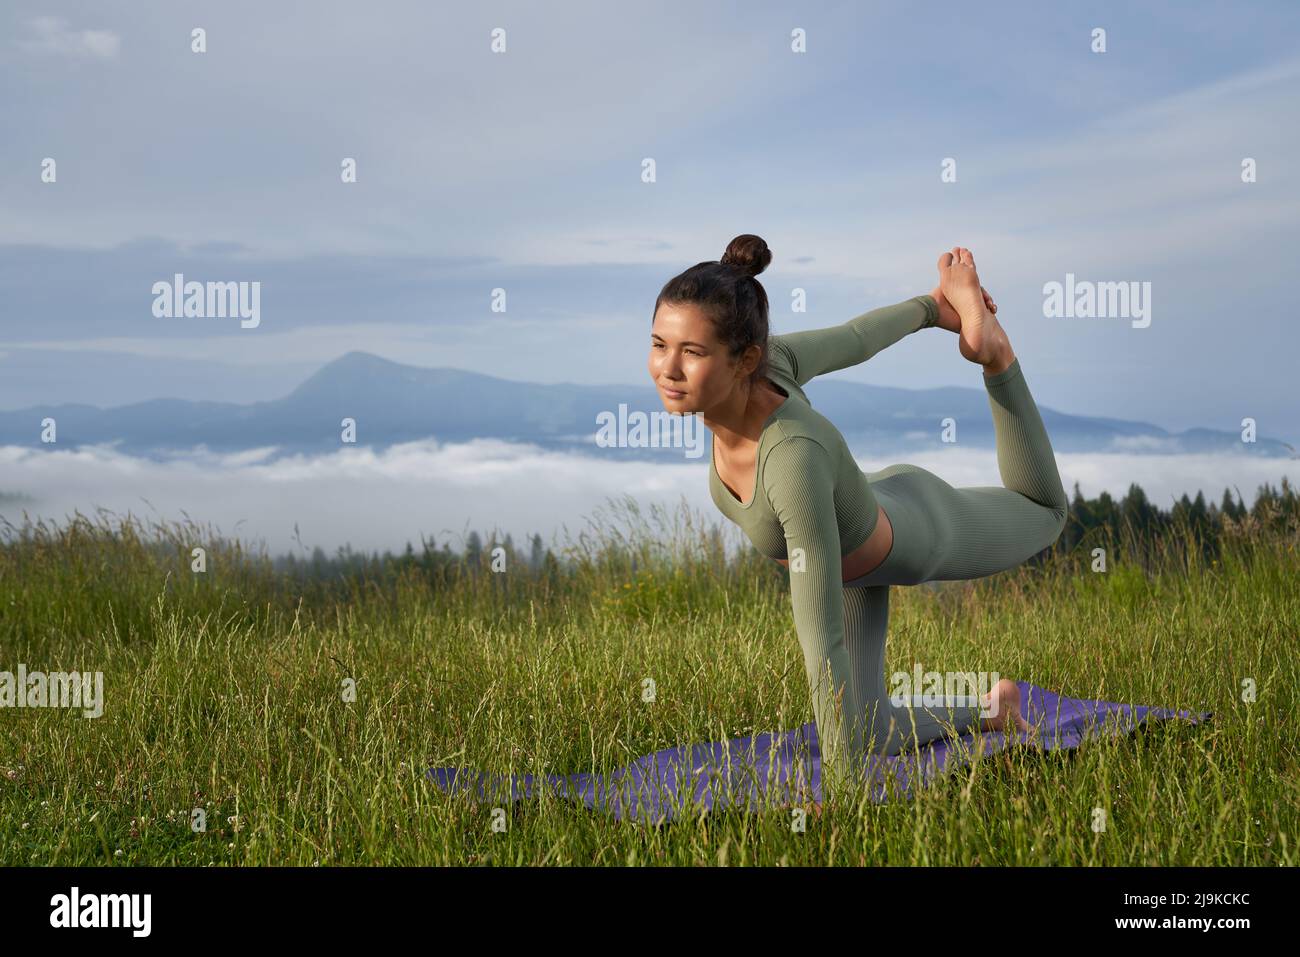 Attraktive Passform Frau in Sportkleidung, die das Gleichgewicht auf einem Knie hält, während sie das Bein im Freien dehnt. Hintergrund von schönen grünen Bergen. Stockfoto